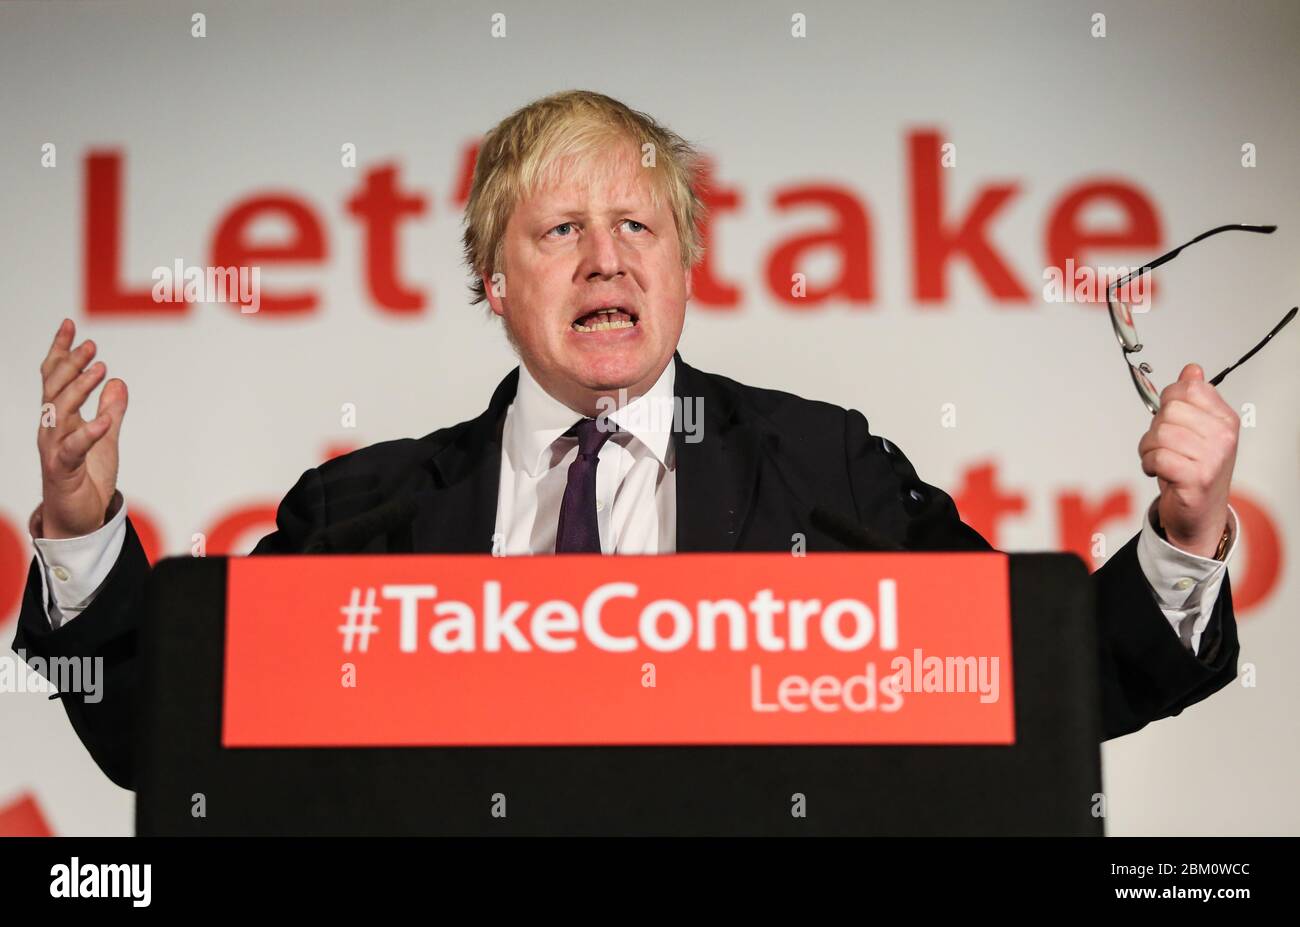 Boris Johnson, député conservateur et maire de Londres, parle lors d'un congé de vote à Leeds, dans le West Yorkshire. Faire campagne pour le référendum, qui va de Banque D'Images